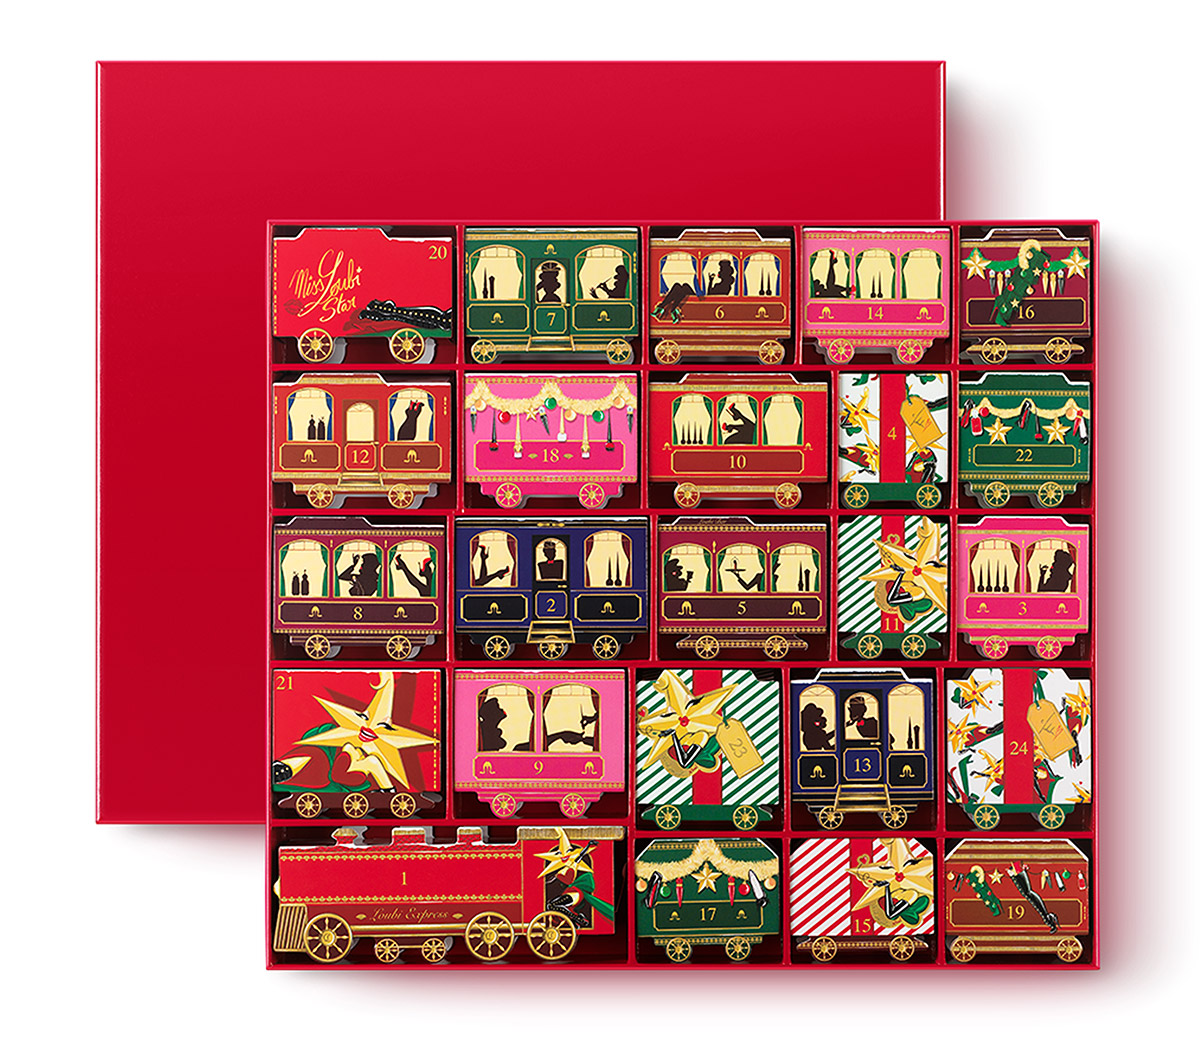 機関車の車両が描かれたアドベントカレンダーのボックスの写真